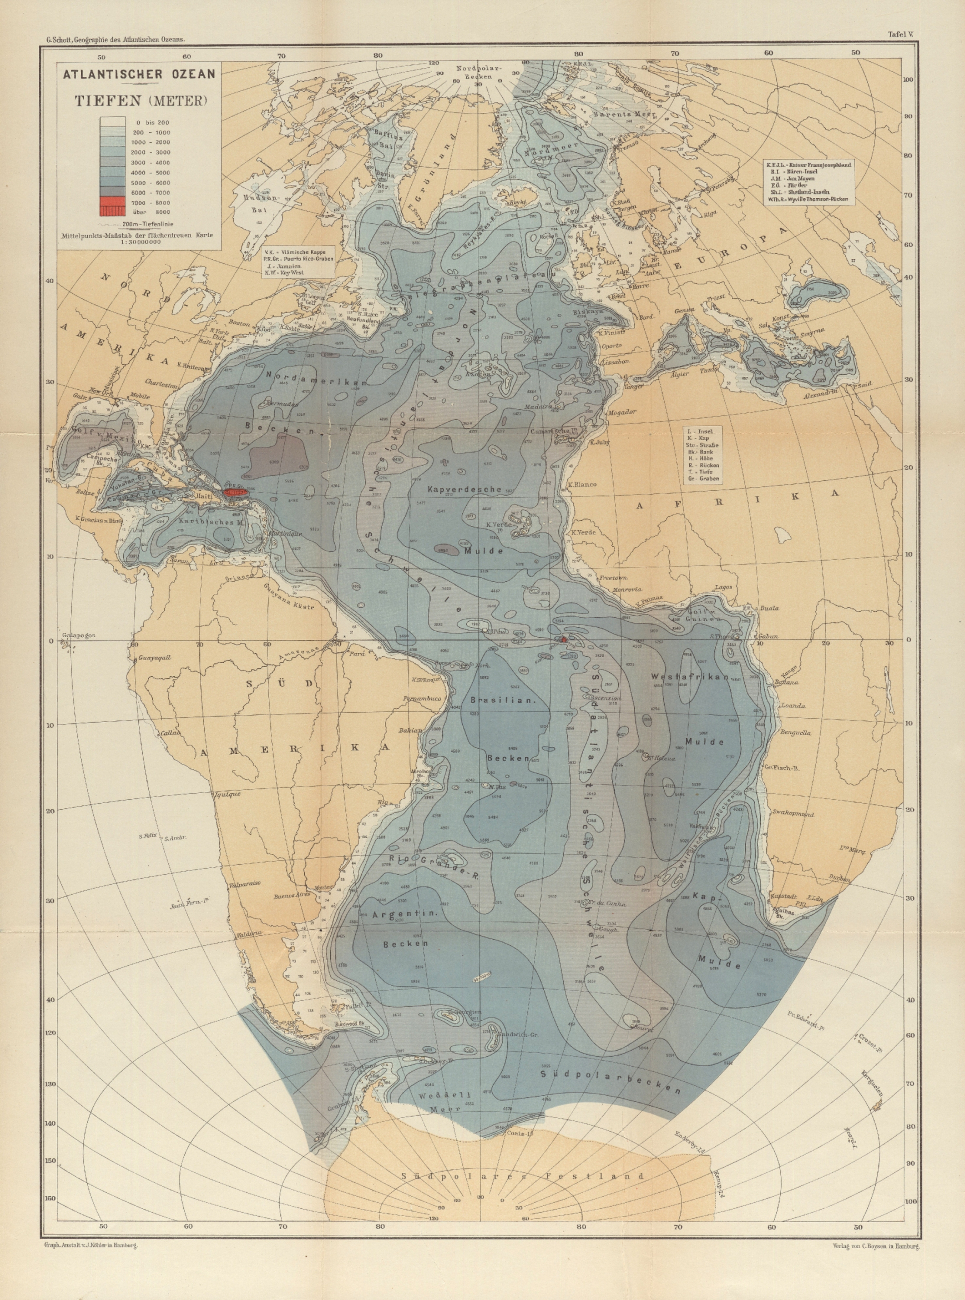 A 1912 map of the Atlantic Ocean by the German oceanographer Gerhard Schott